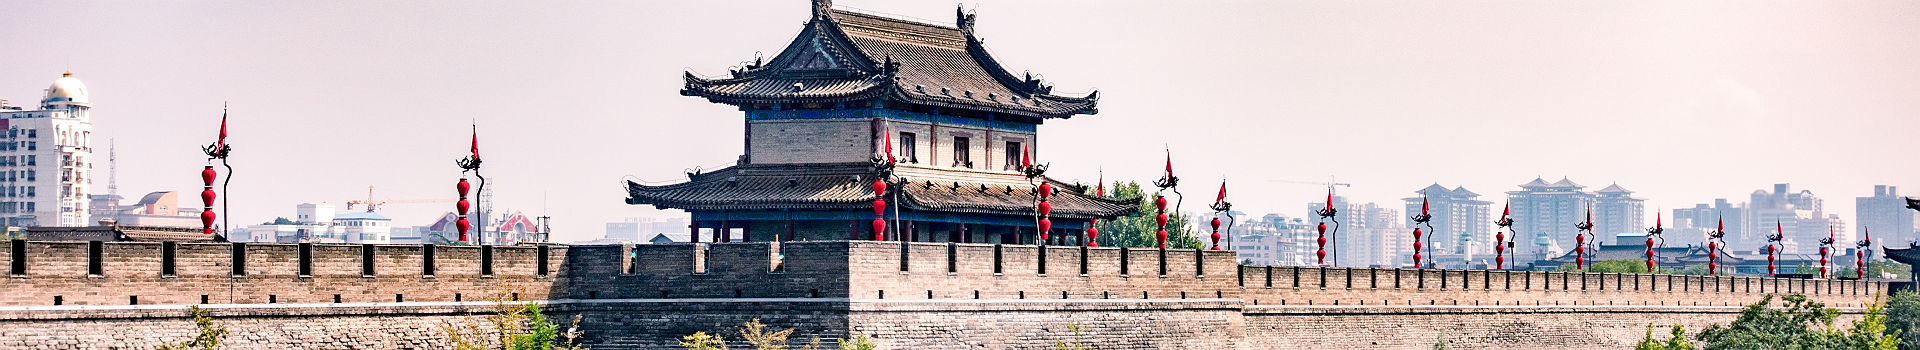 Chine - Vue sur la muraille de la ville de Xi'an